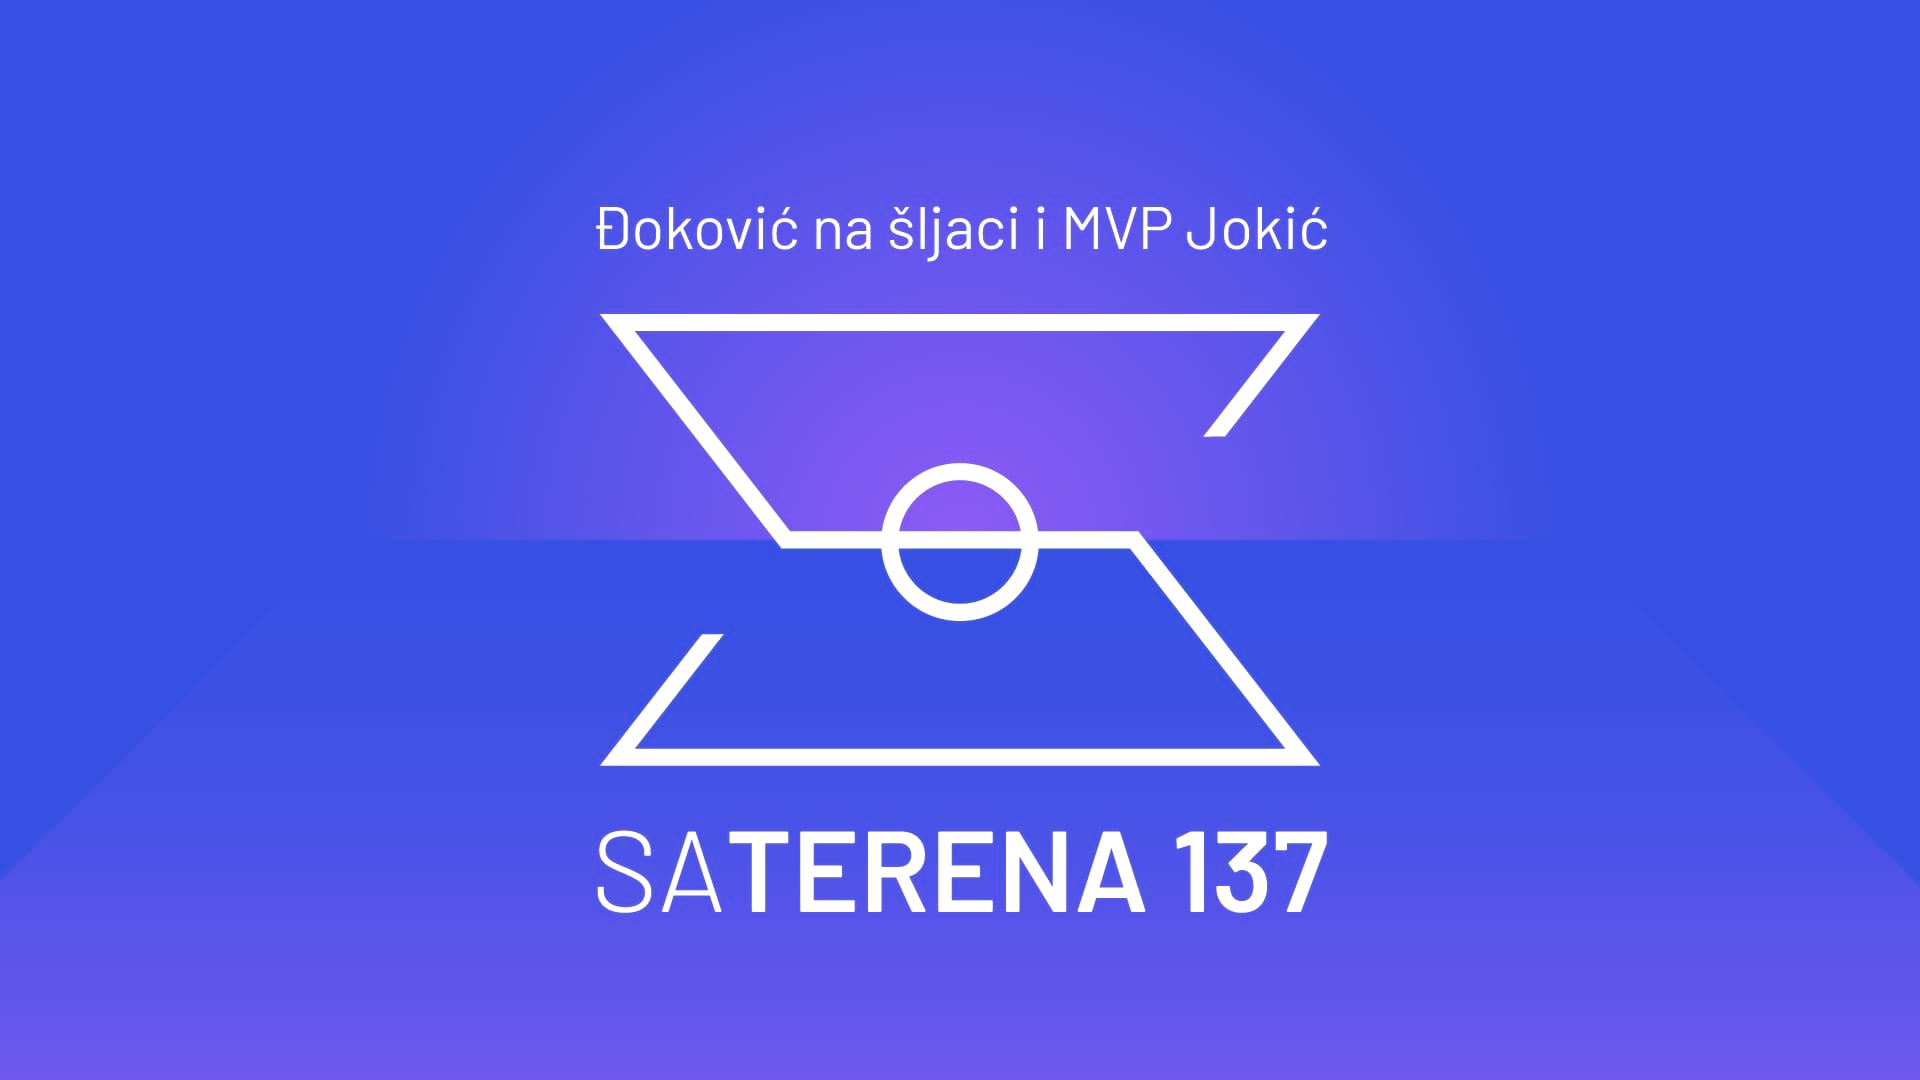 Sa terena 137: Đoković na šljaci i MVP Jokić